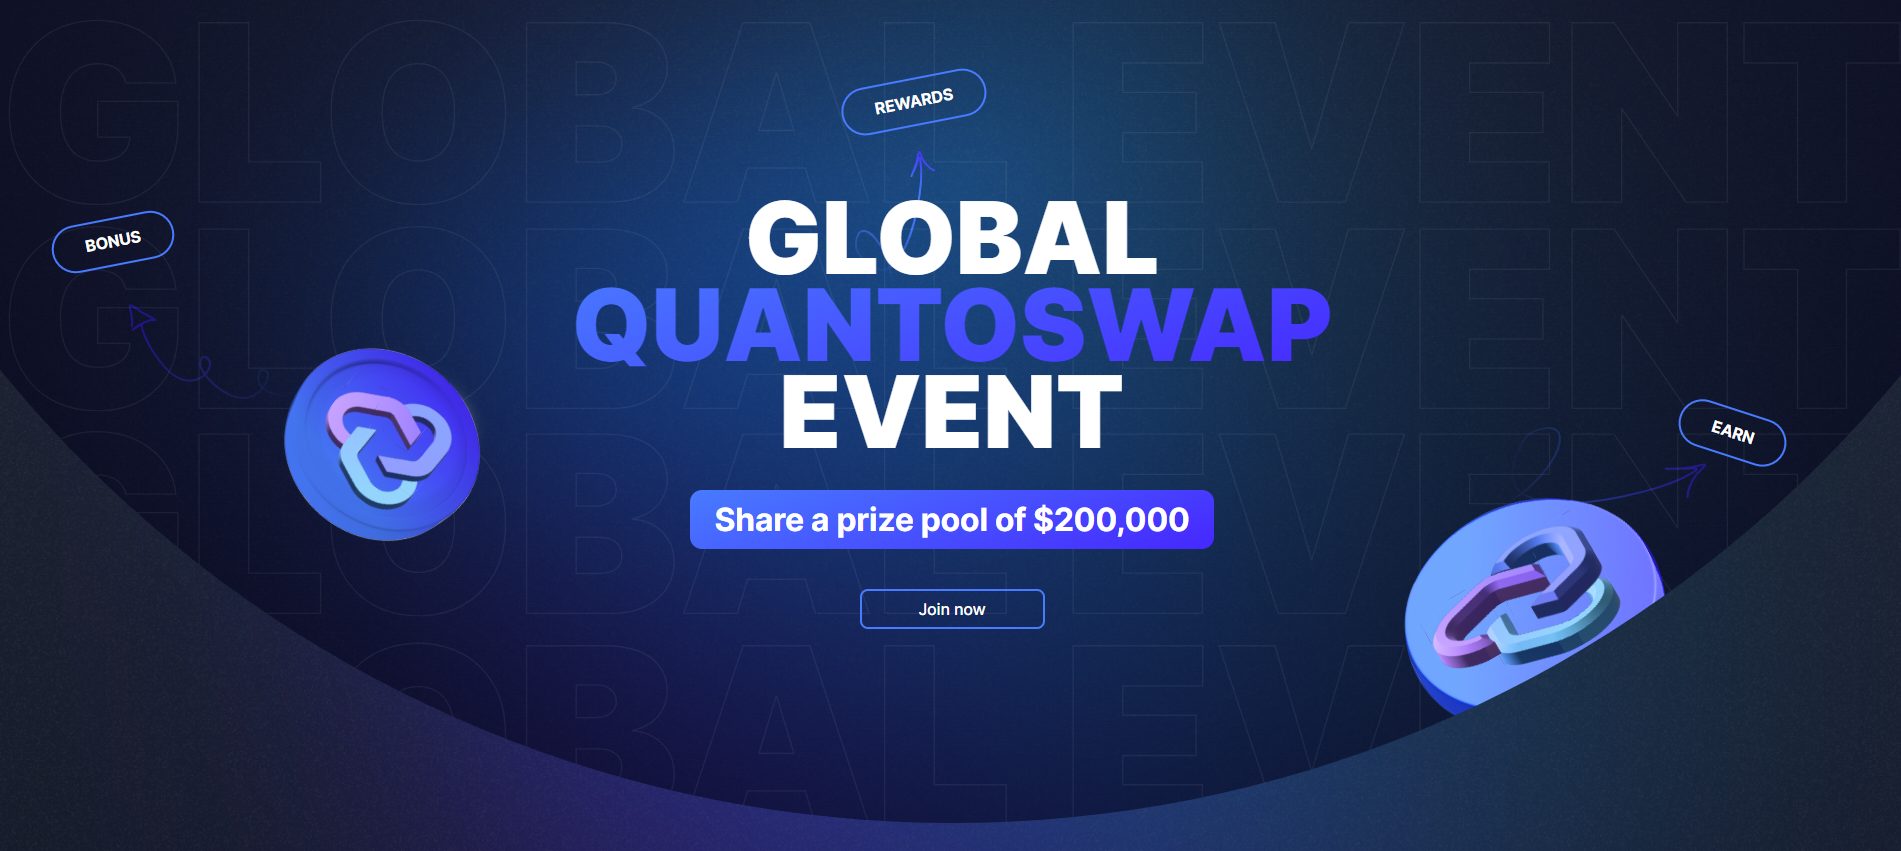 Представляем QuantoSwap: революционную DEX на базе Ethereum с несколькими источниками дохода